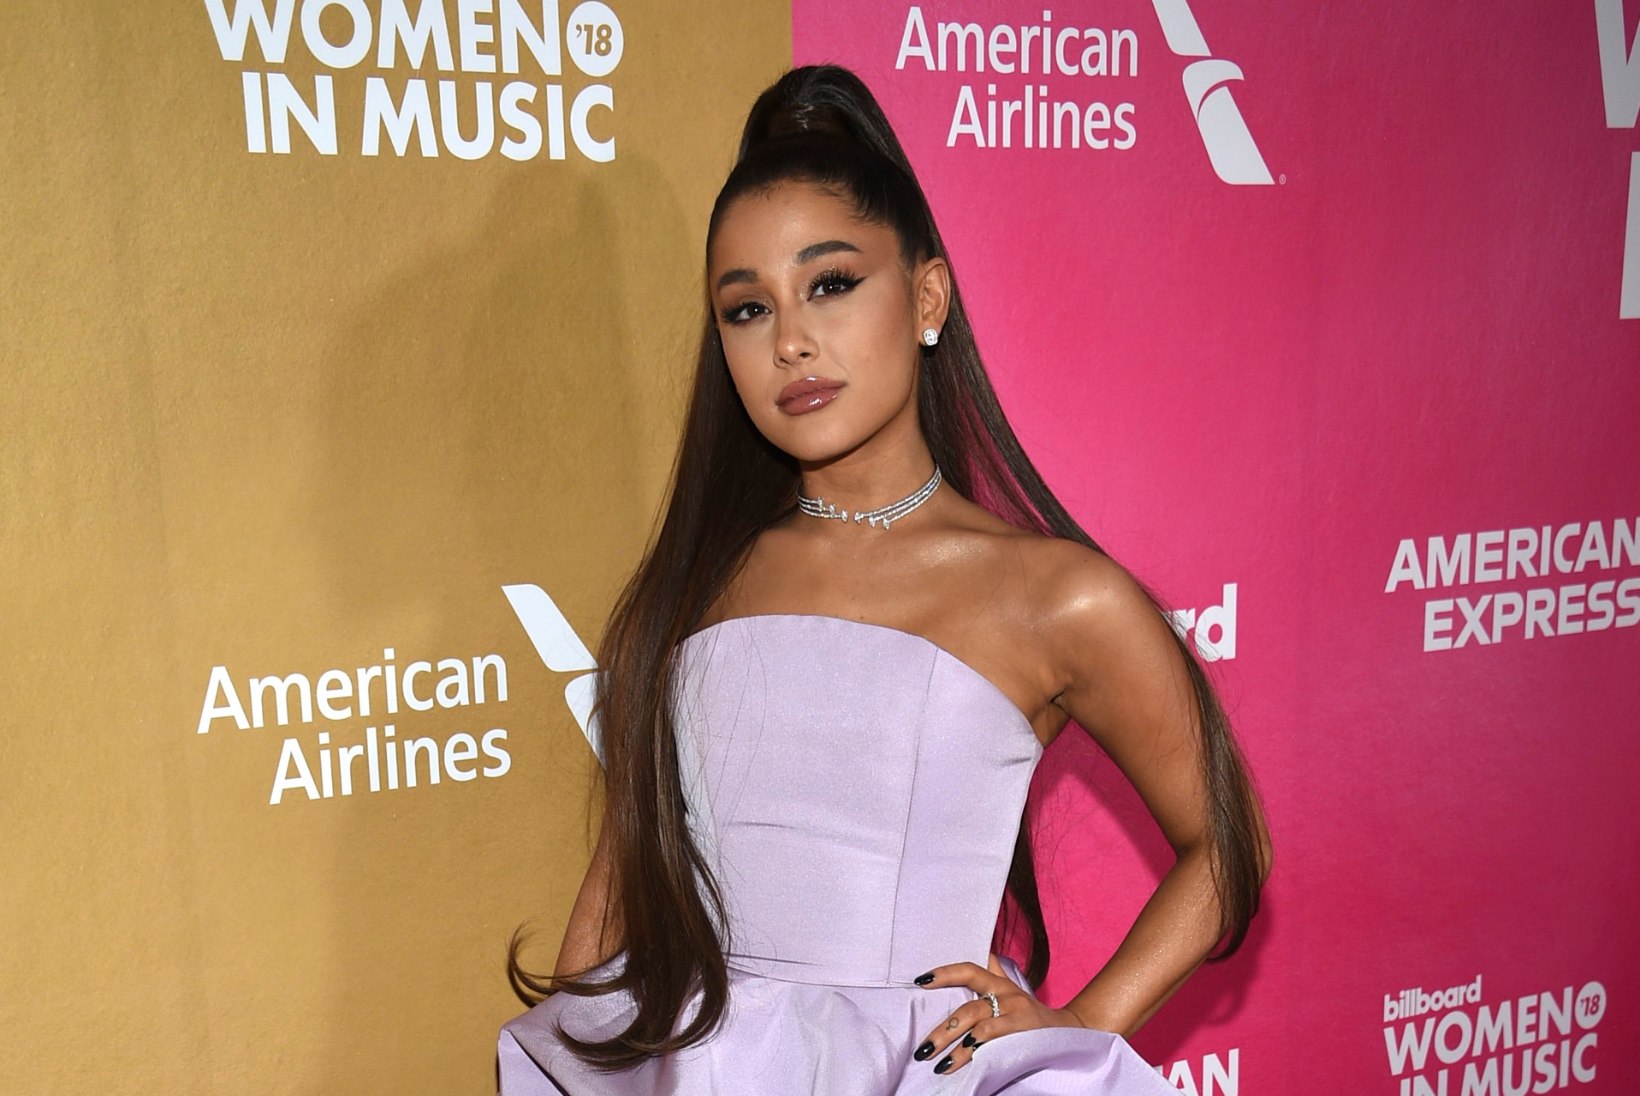 Ariana Grandet süüdistatakse plagiaadis